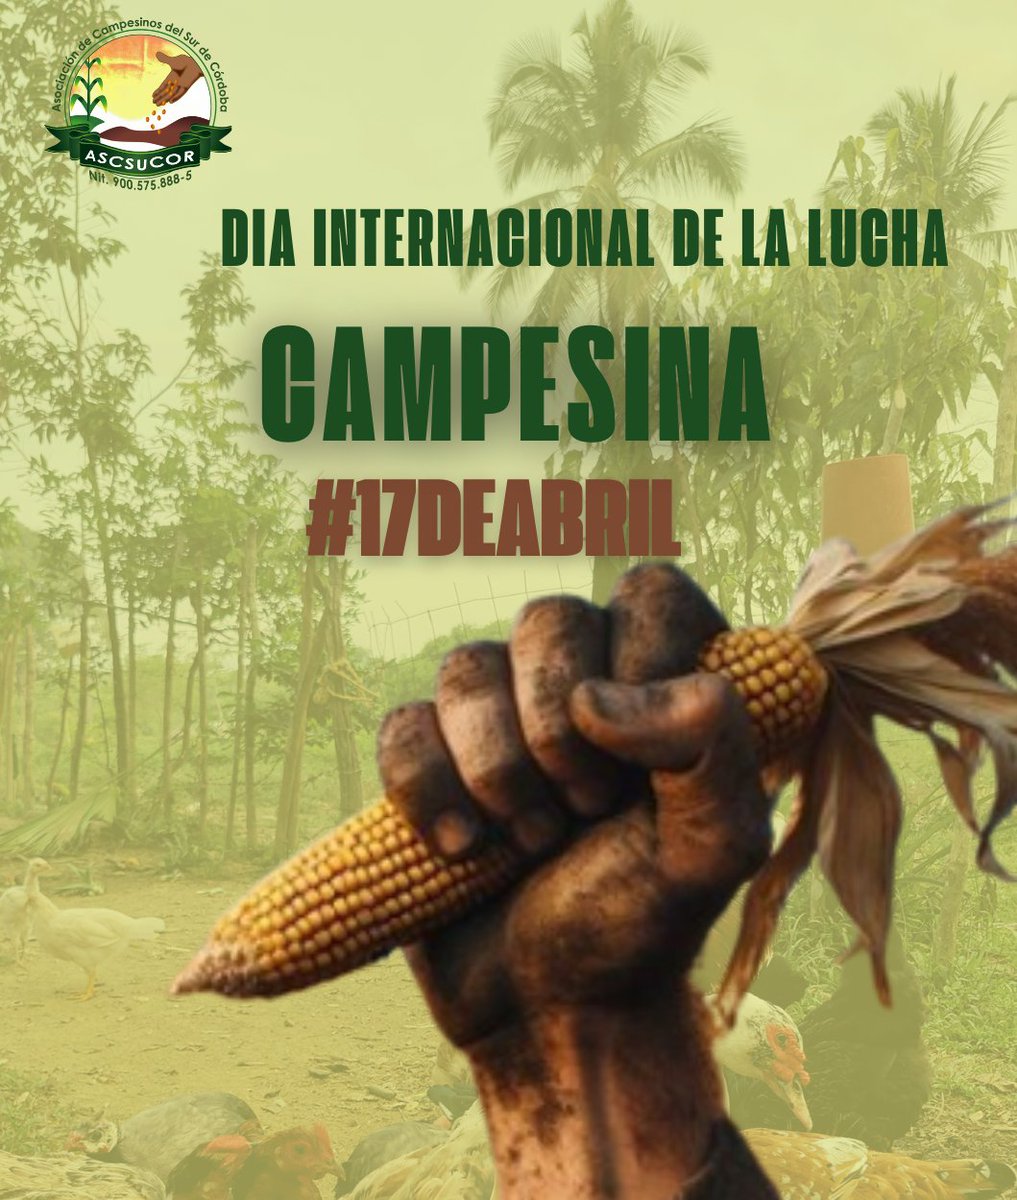 Hoy #17Abril #DíaInternacionaldelaLuchaCampesina, celebramos y resaltamos la gallardía de nuestros campesinos y campesinas, lideres y lideresas del sur de Córdoba, que luchan por los derechos del campesinado.
Desde ASCSUCOR alzamos la voz de resistencia por el reconocimiento a…